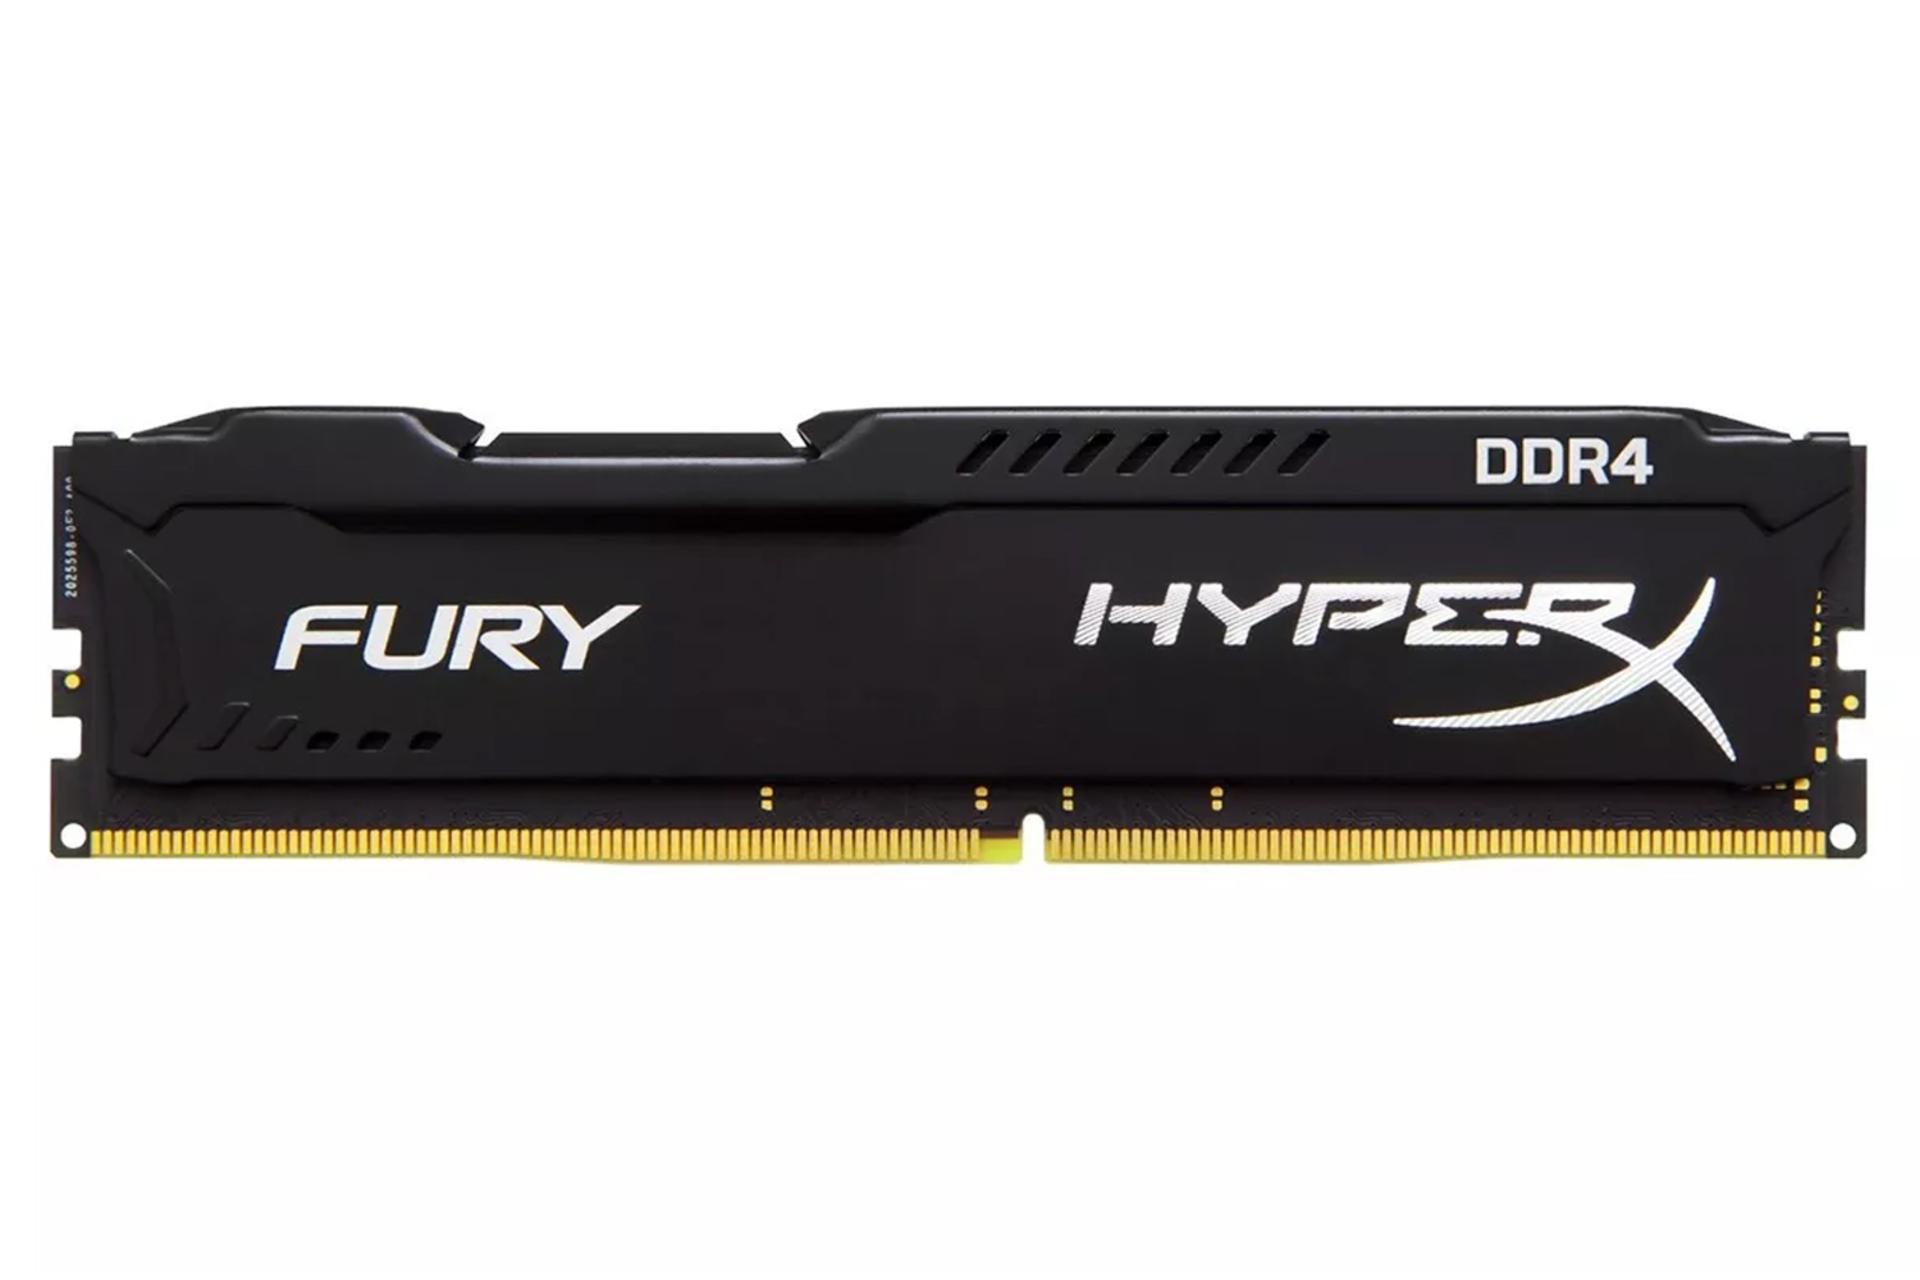 نمای جلو هایپرایکس Fury ظرفیت 16 گیگابایت از نوع DDR4-2400